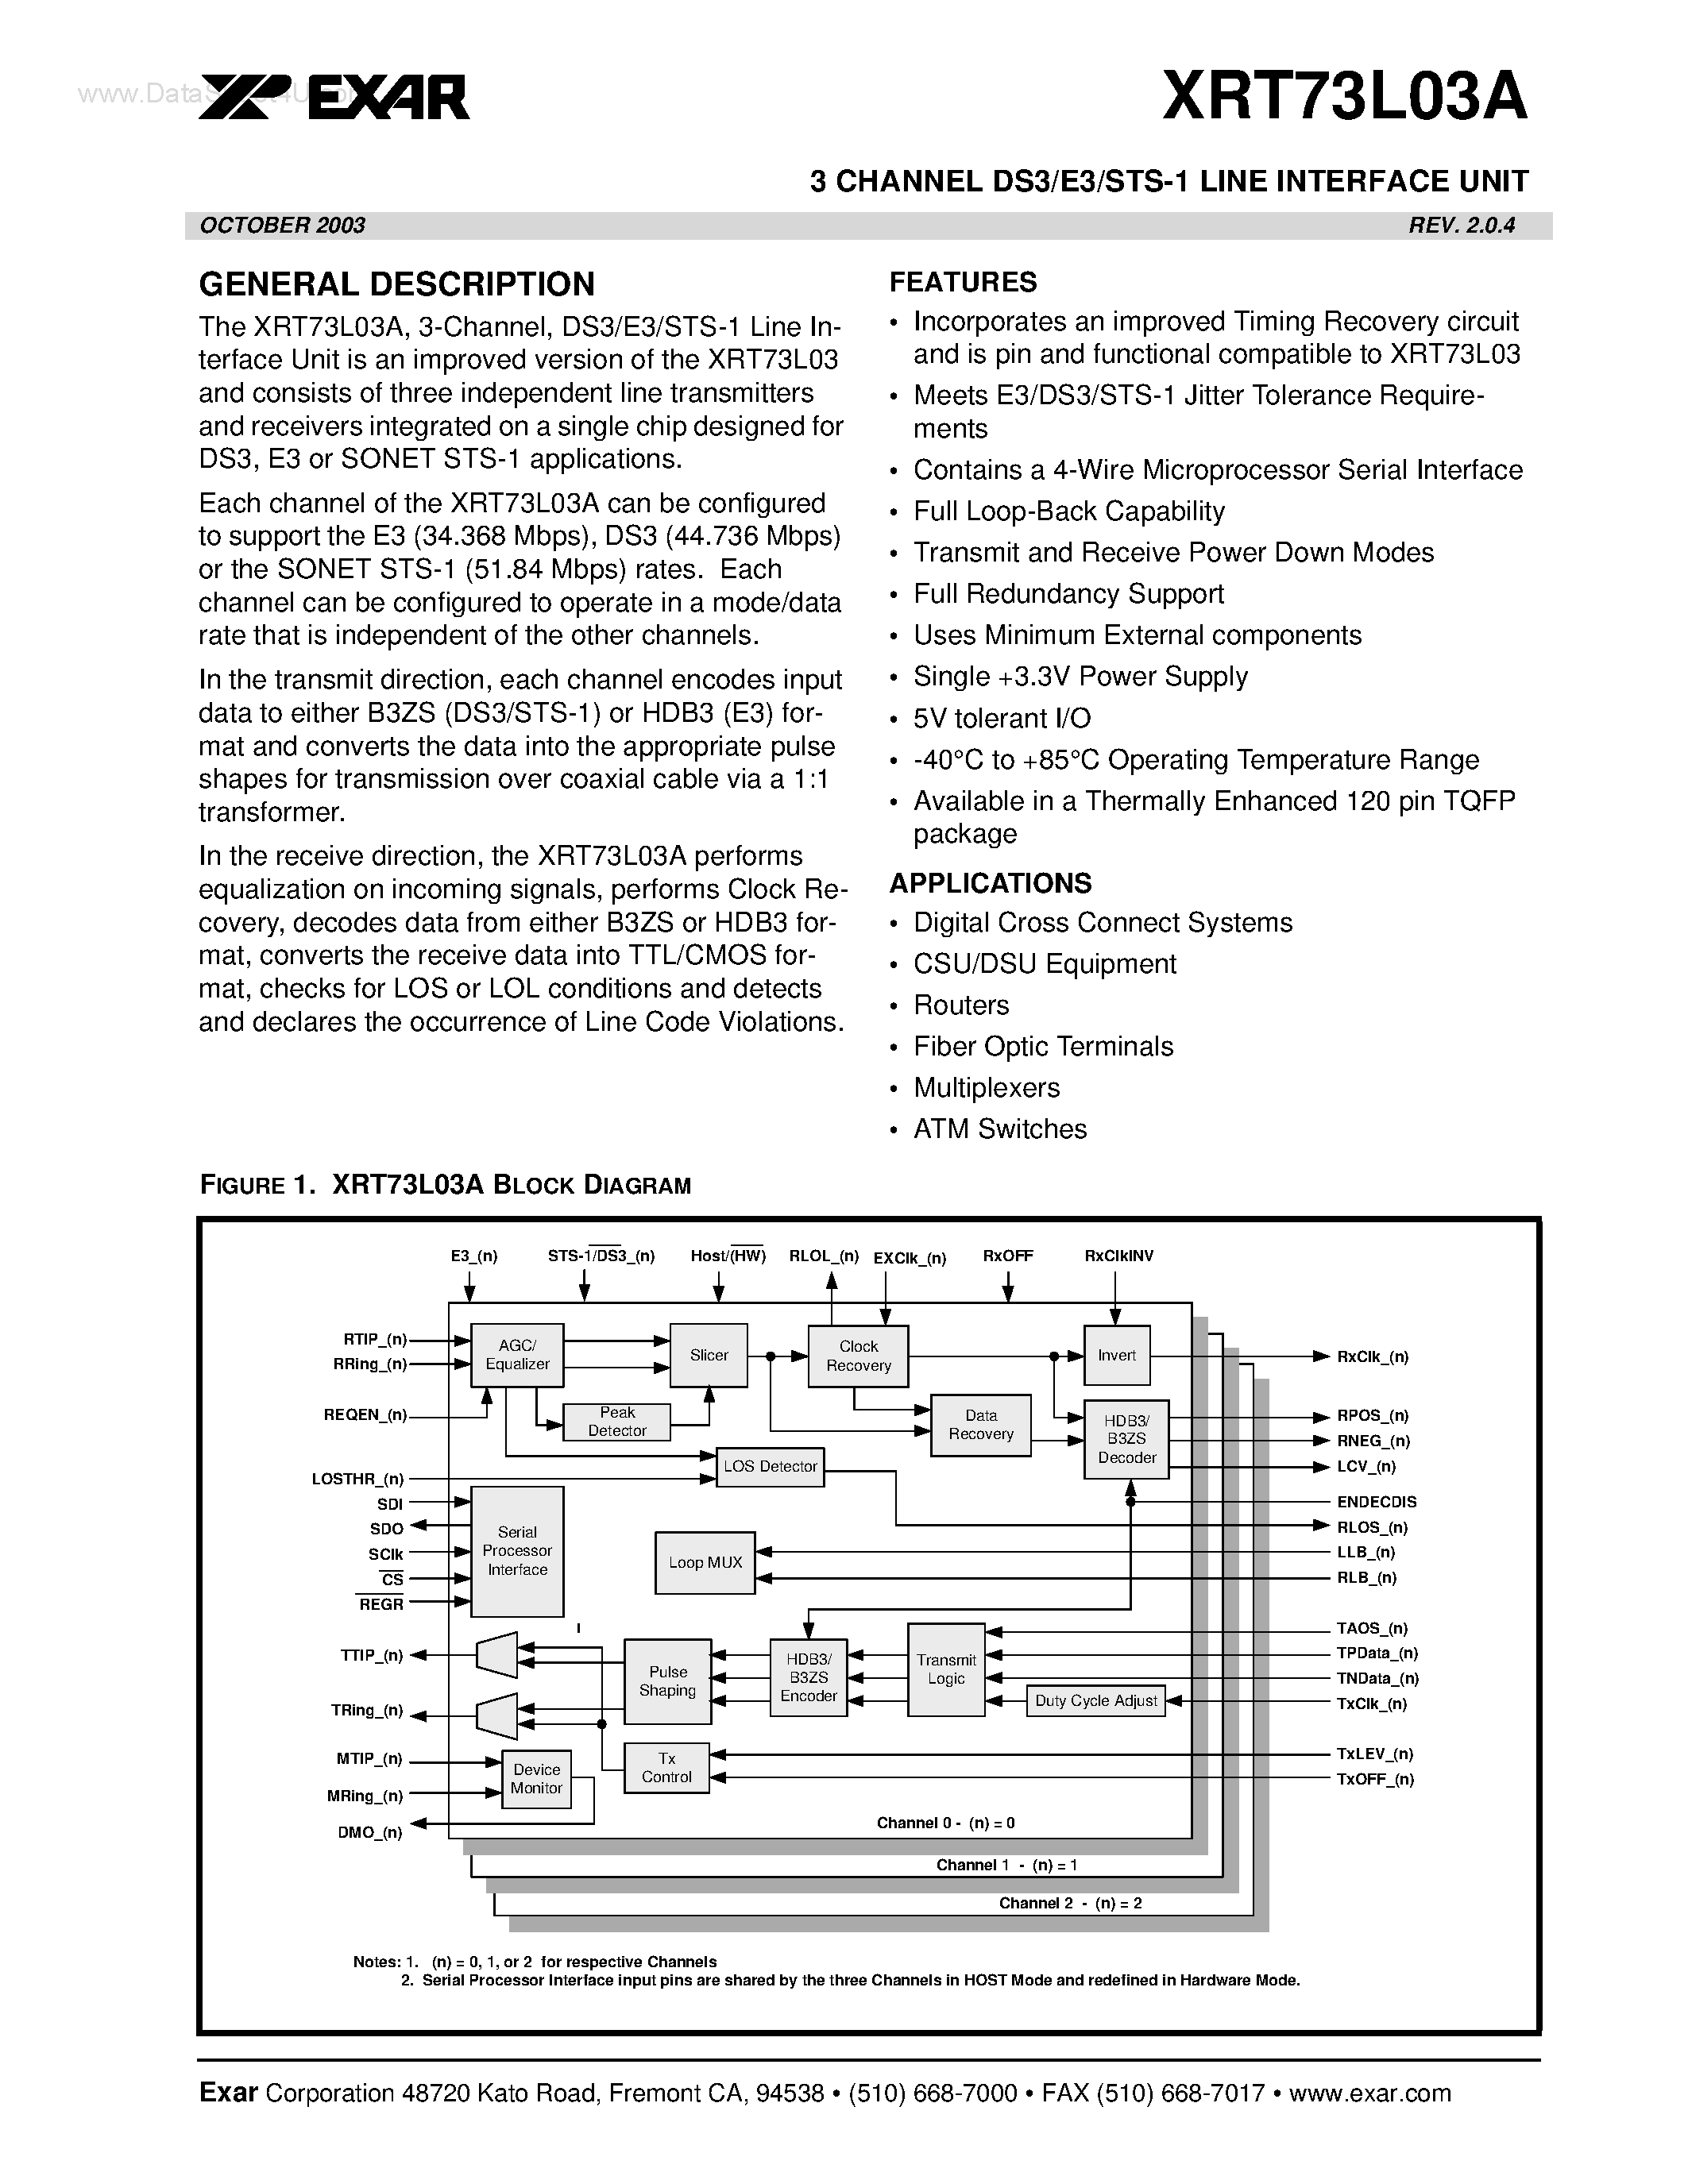 Даташит XRT73L03A - 3 CHANNEL DS3/E3/STS-1 LINE INTERFACE UNIT страница 1